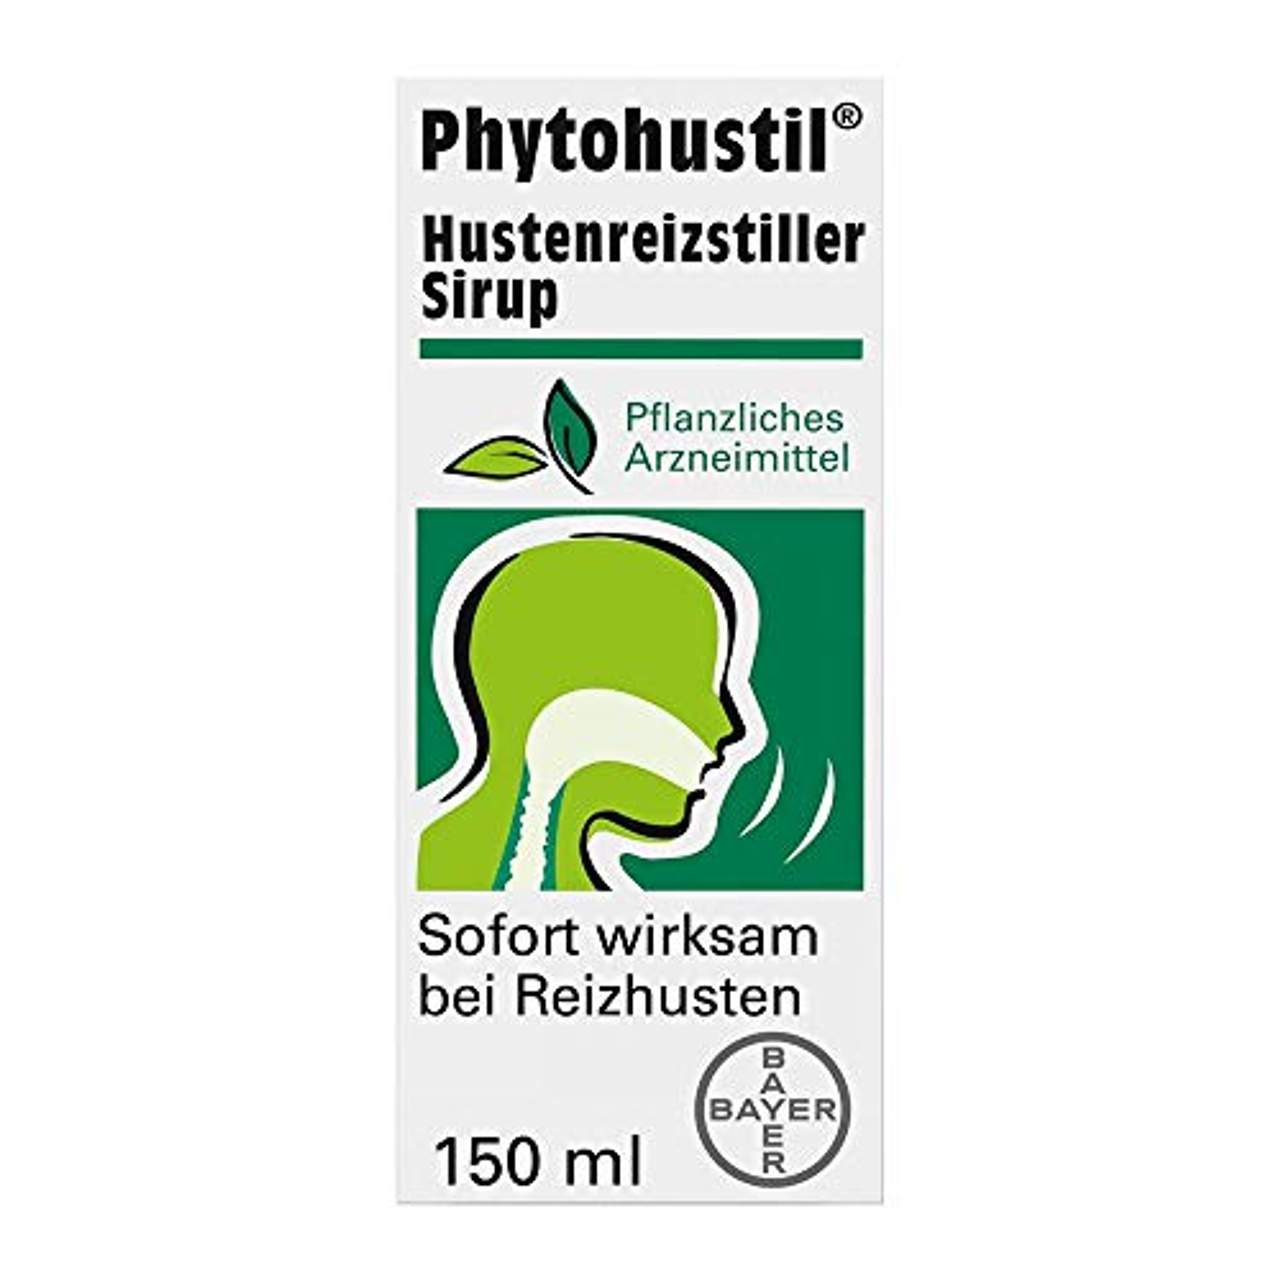 Bayer Phytohustil Hustenreizstiller Sirup